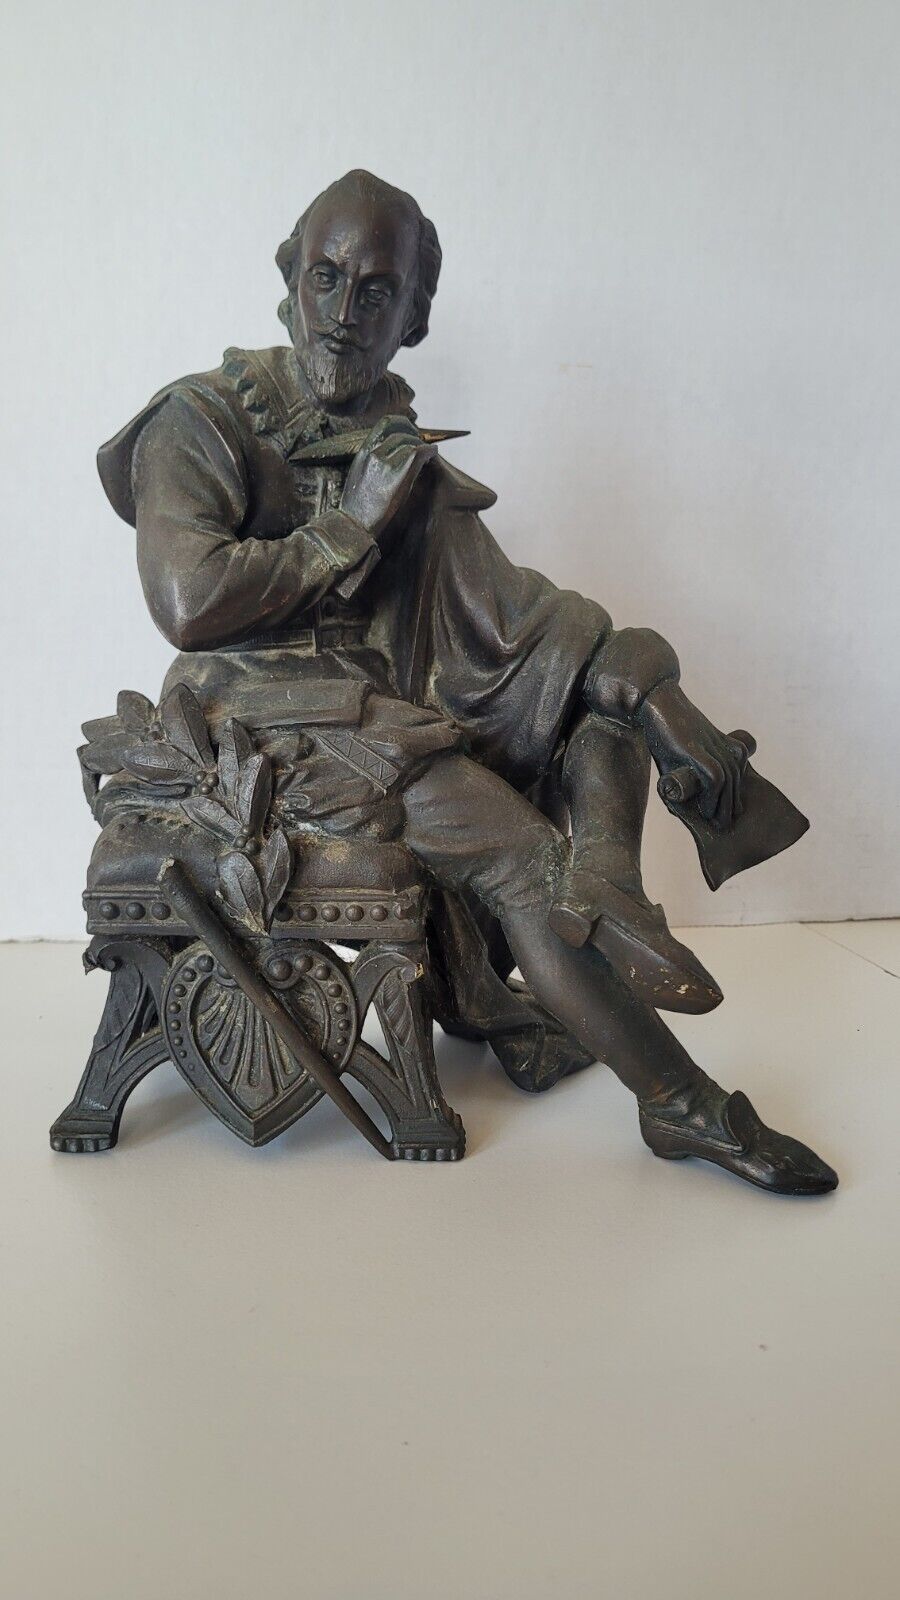 19th Century William Shakespeare Cast Metal Sculpture Figurine Rare Antique 